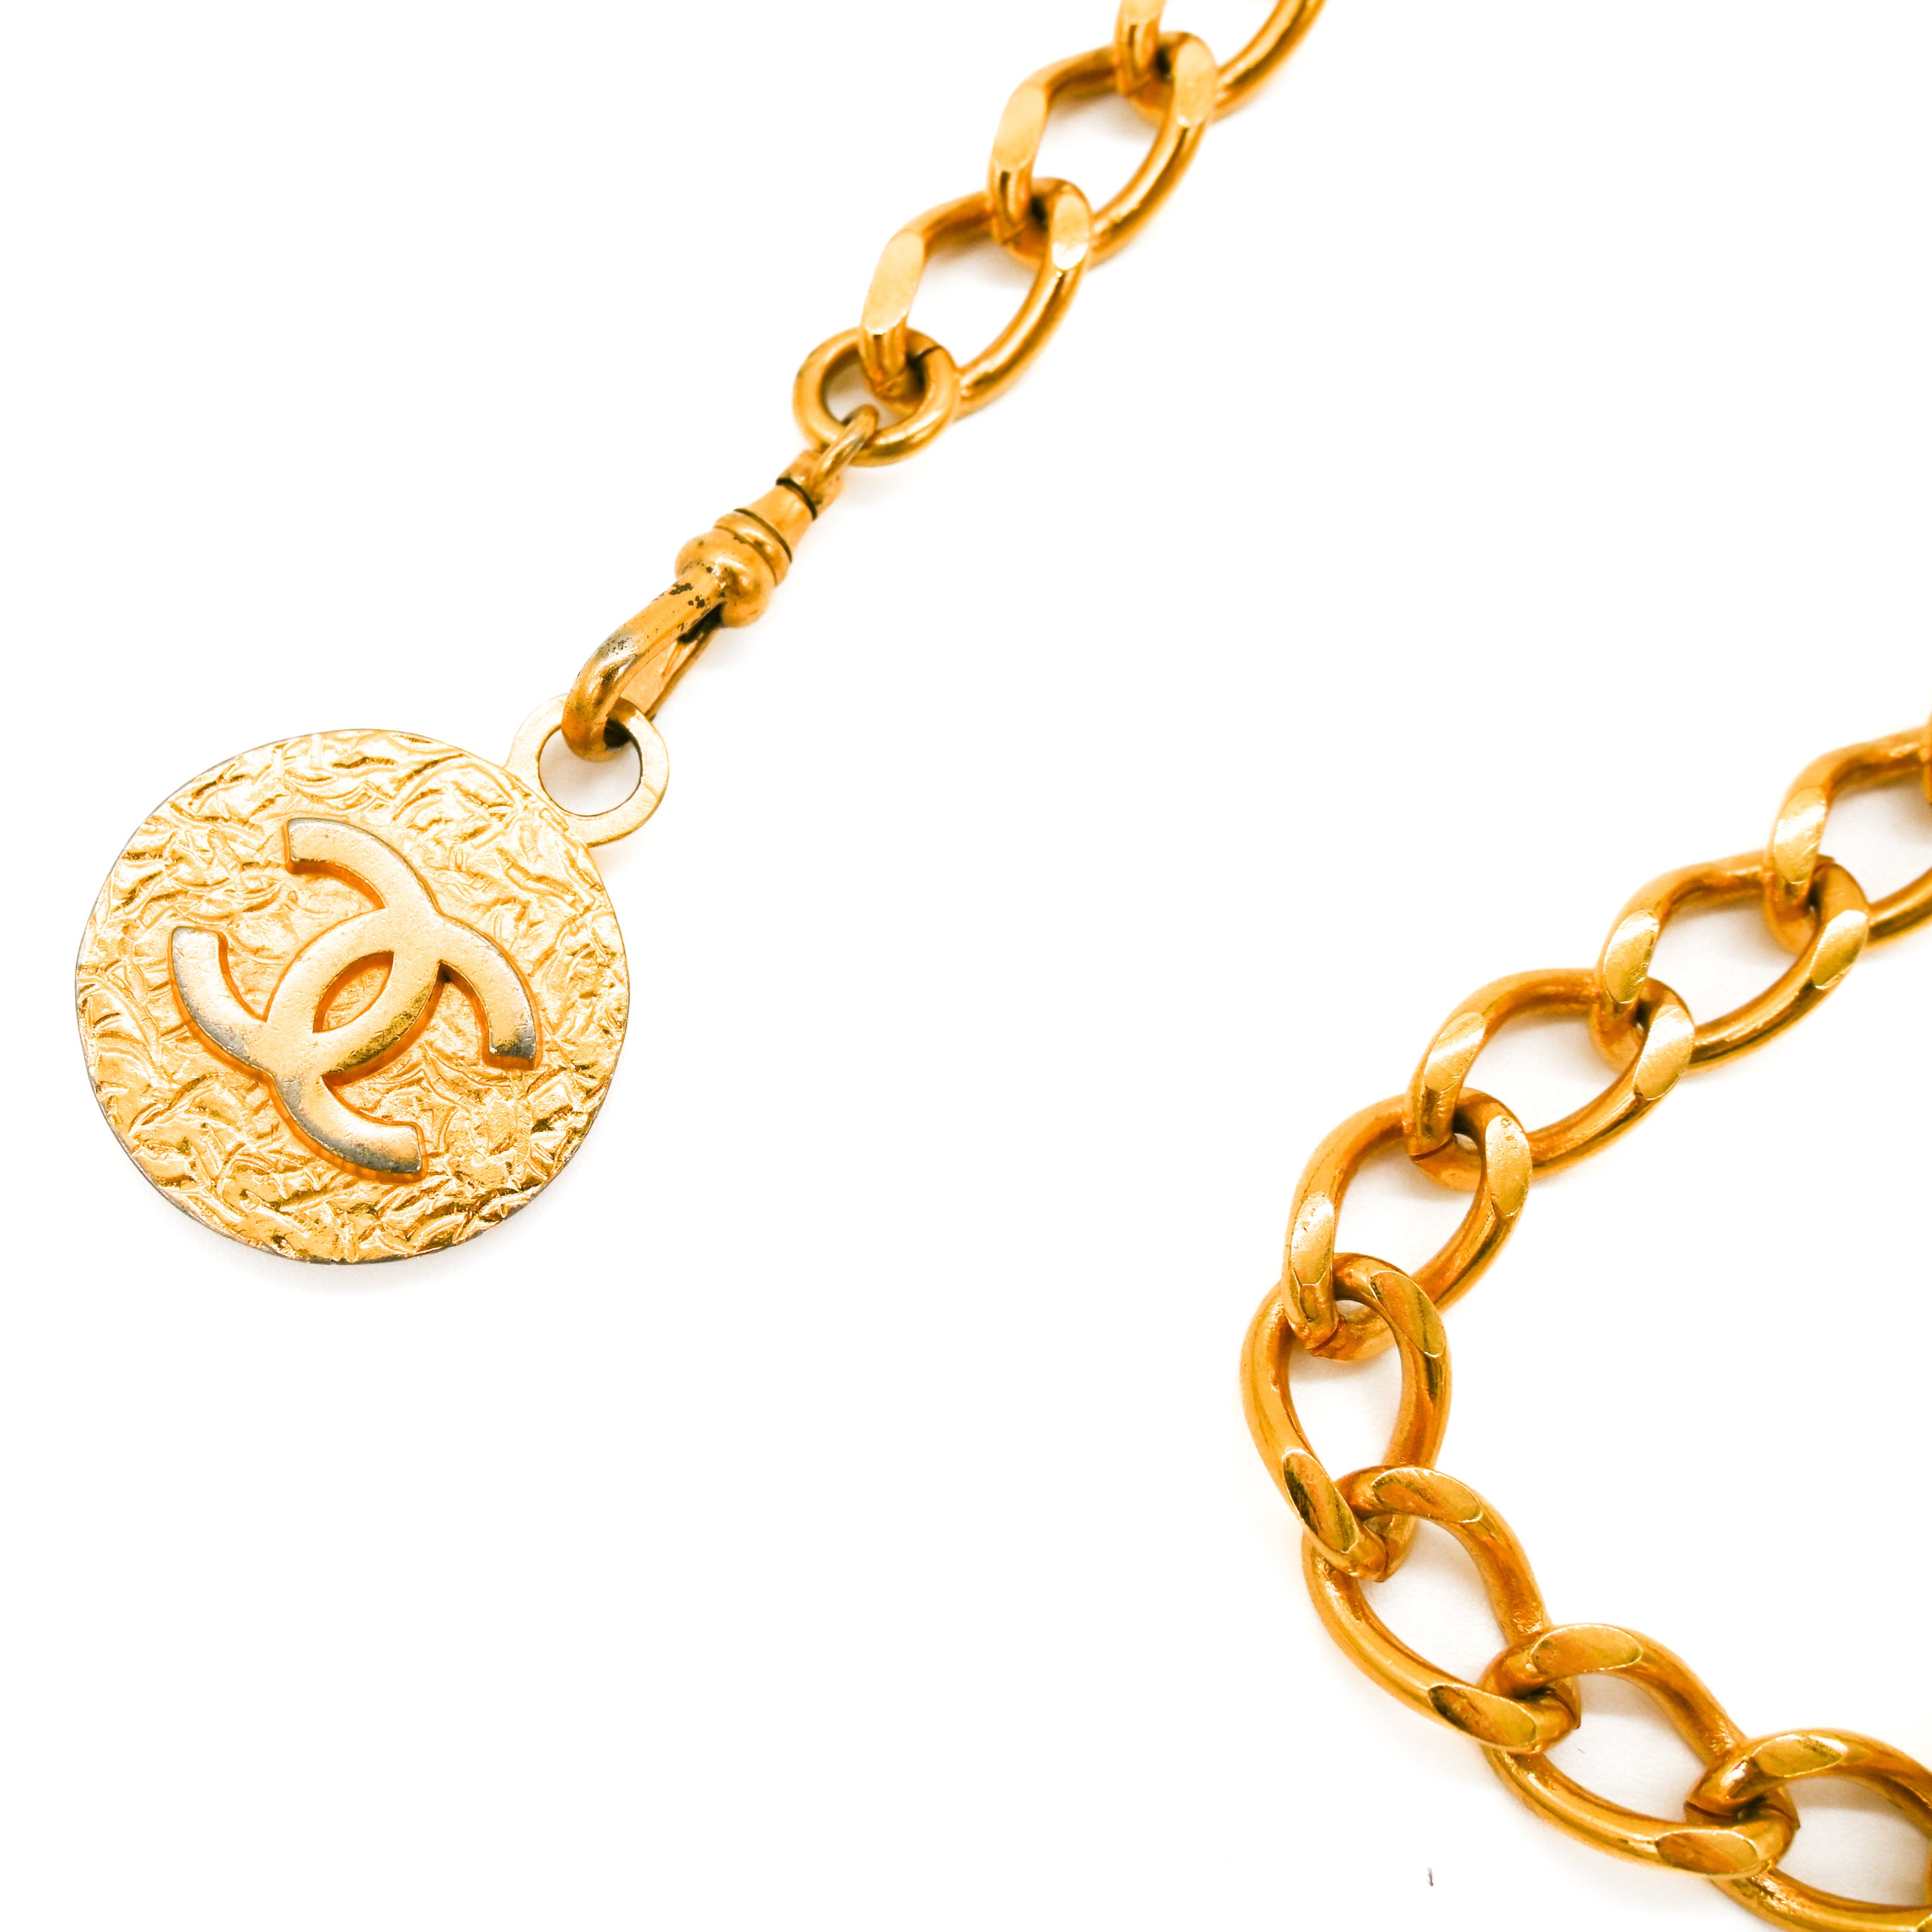 CHANEL Chanel 1982 Vintage Medallion Chain Link Belt - Vault 55